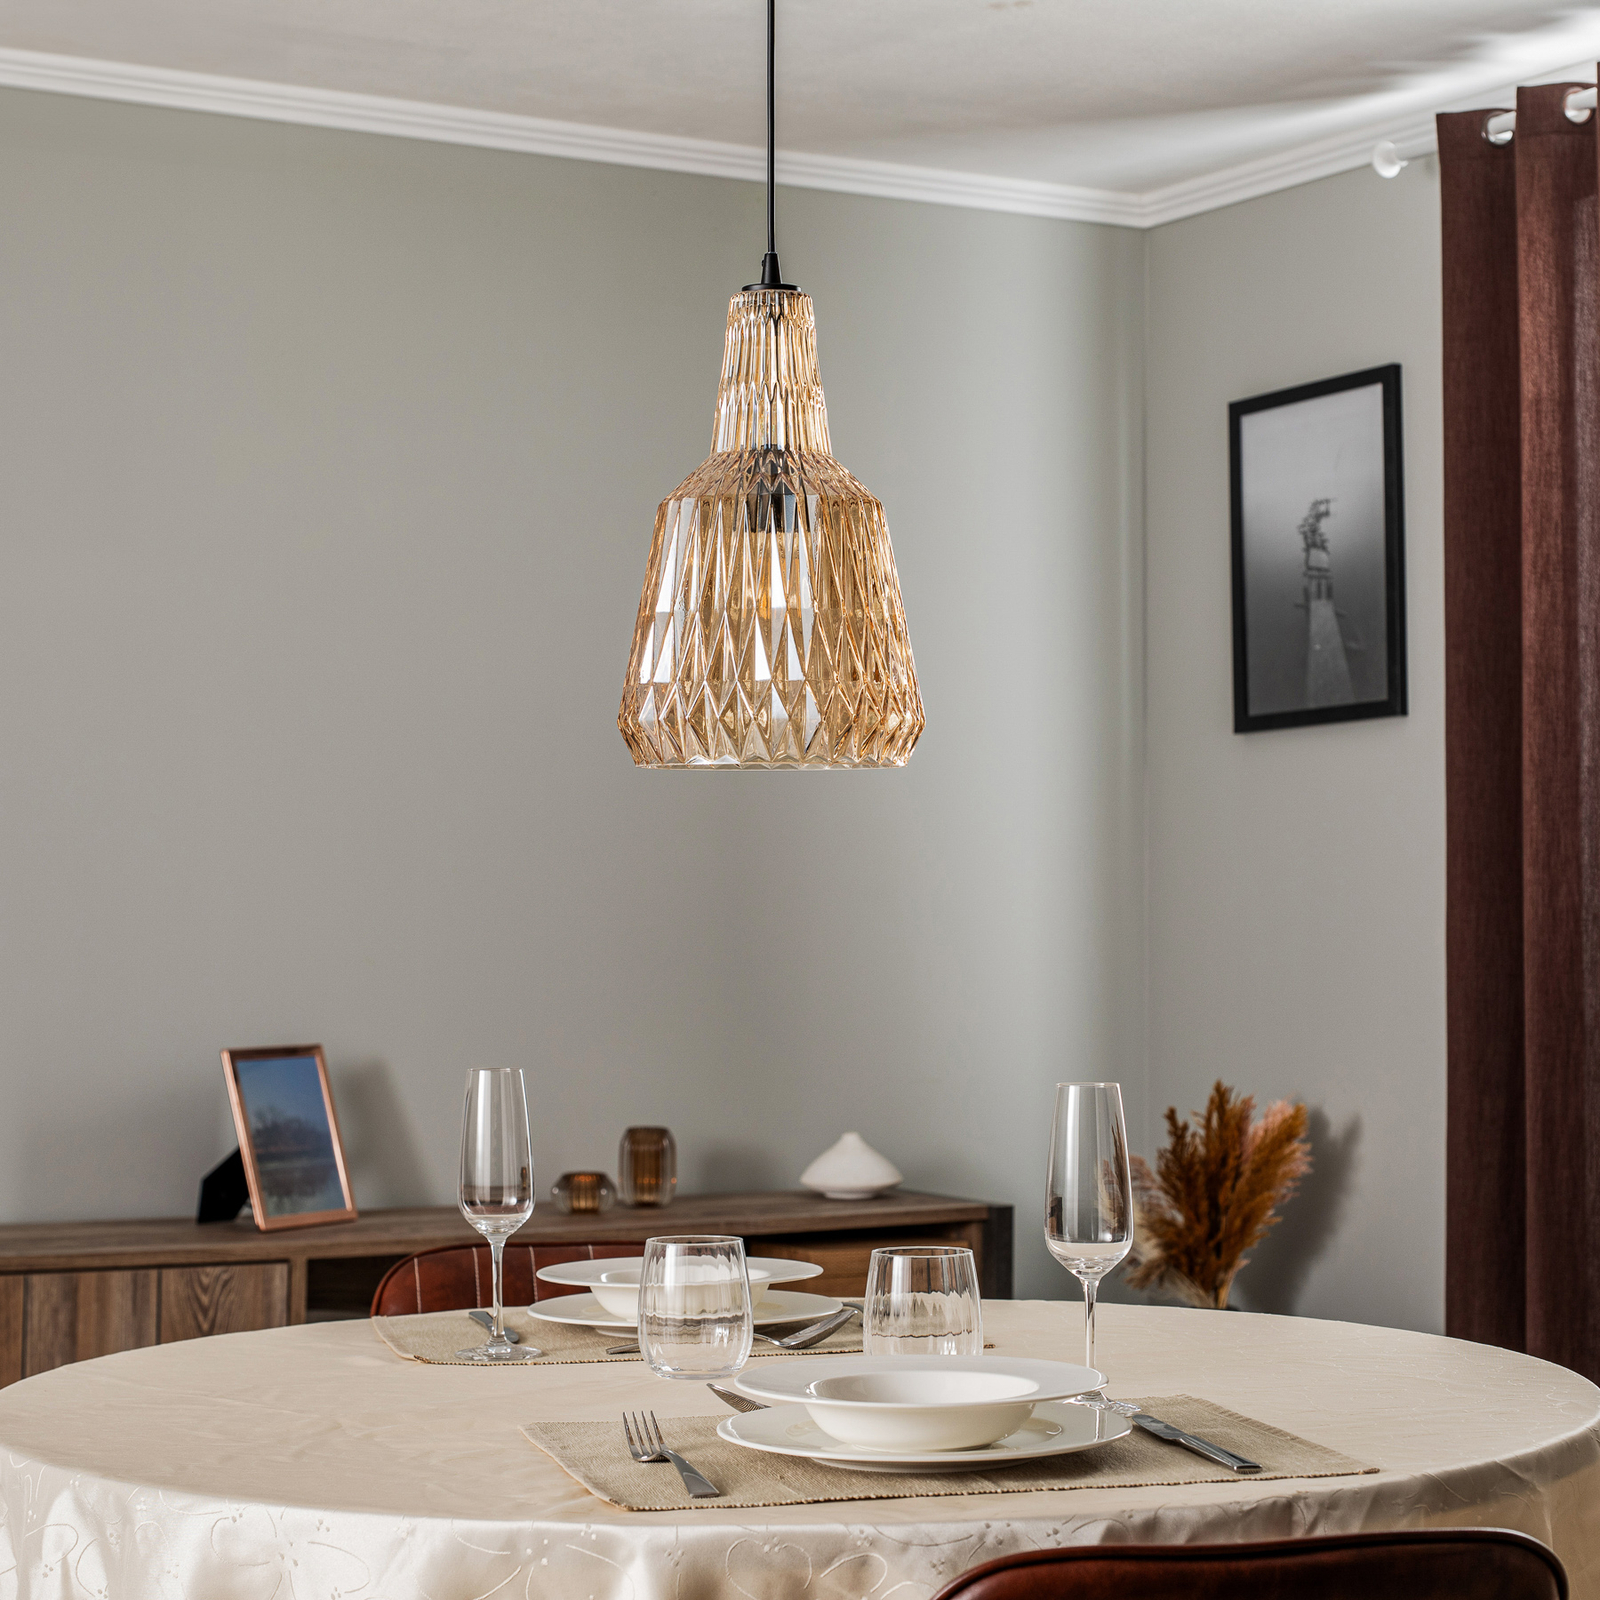 Lindby hanglamp Belarion, barnsteen, glas, Ø 23 cm